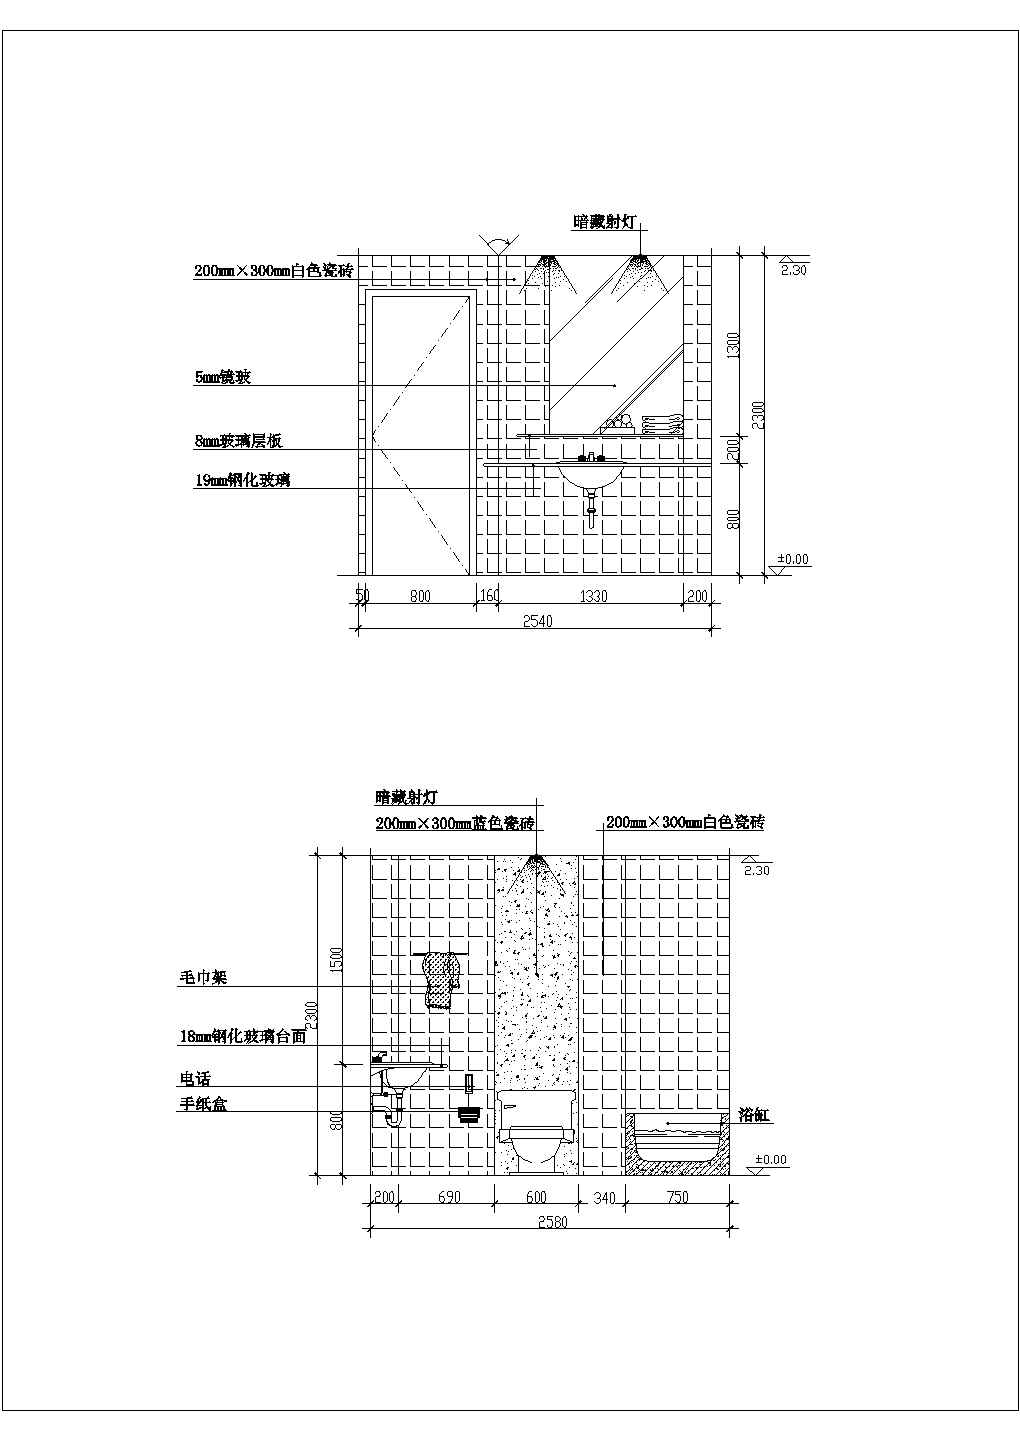 【苏州】某地园林景区全套设施施工设计cad图纸